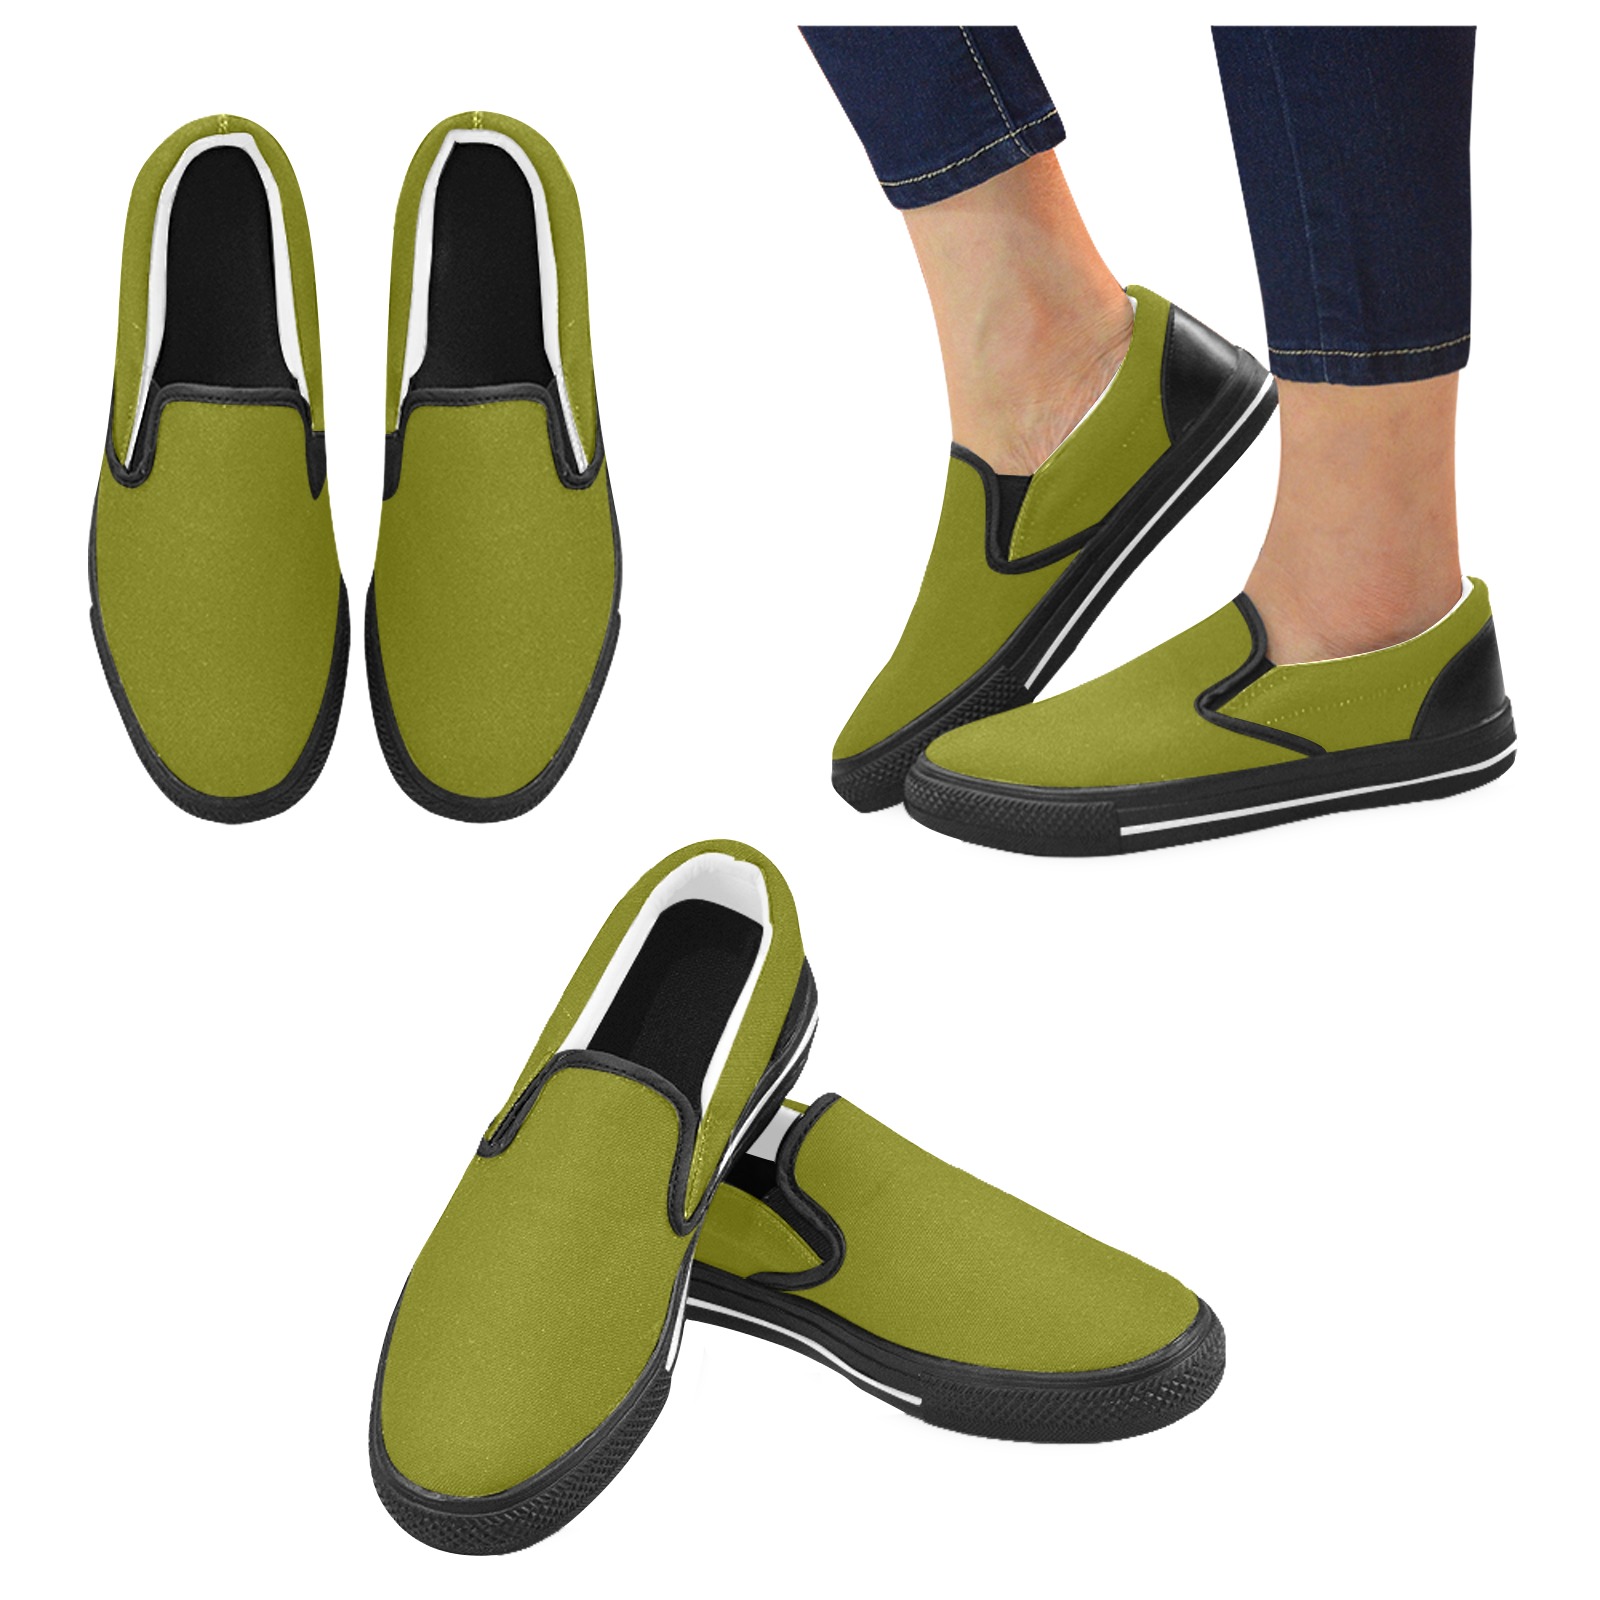 color olive Men's Slip-on Canvas Shoes (Model 019)